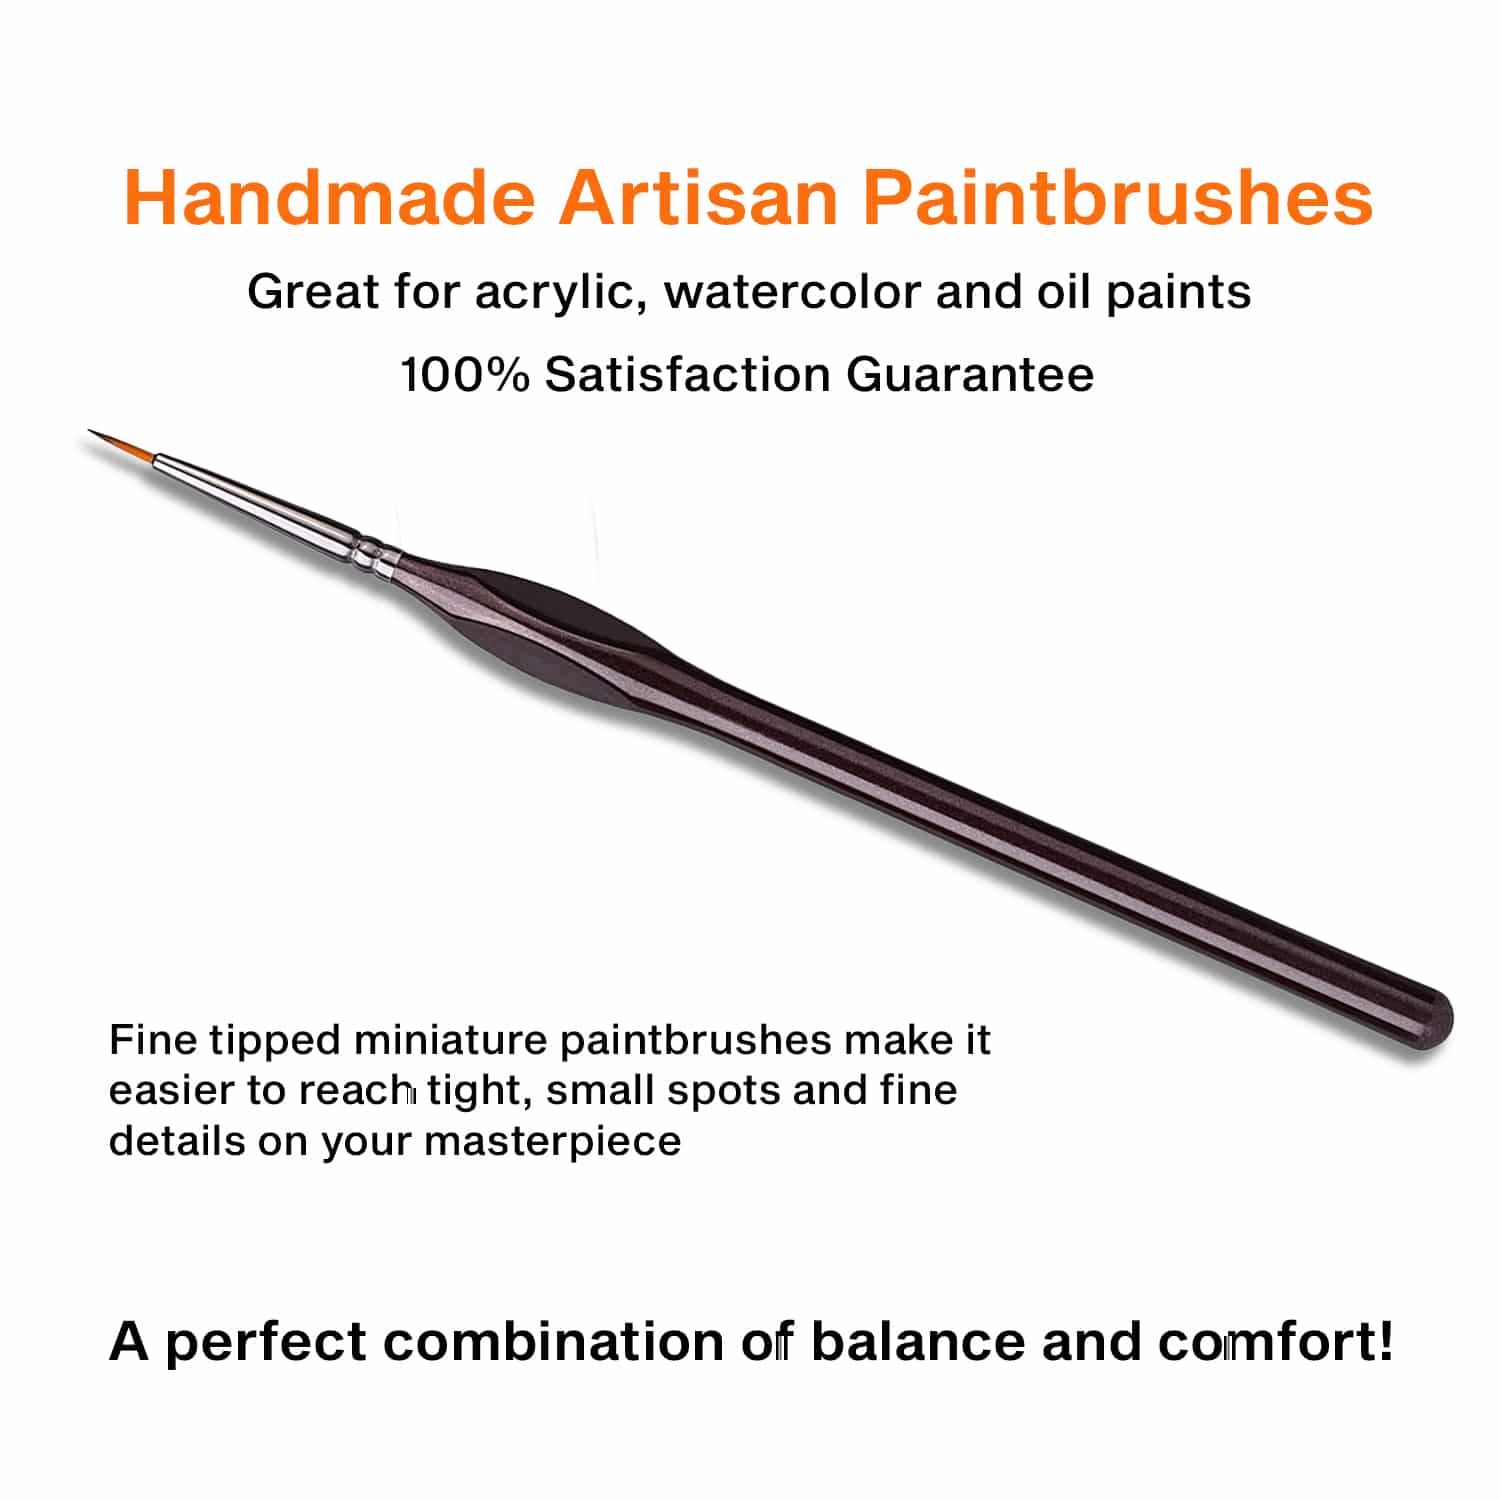 Handmade artisan paintbrush with glossy brown ergonomic handle